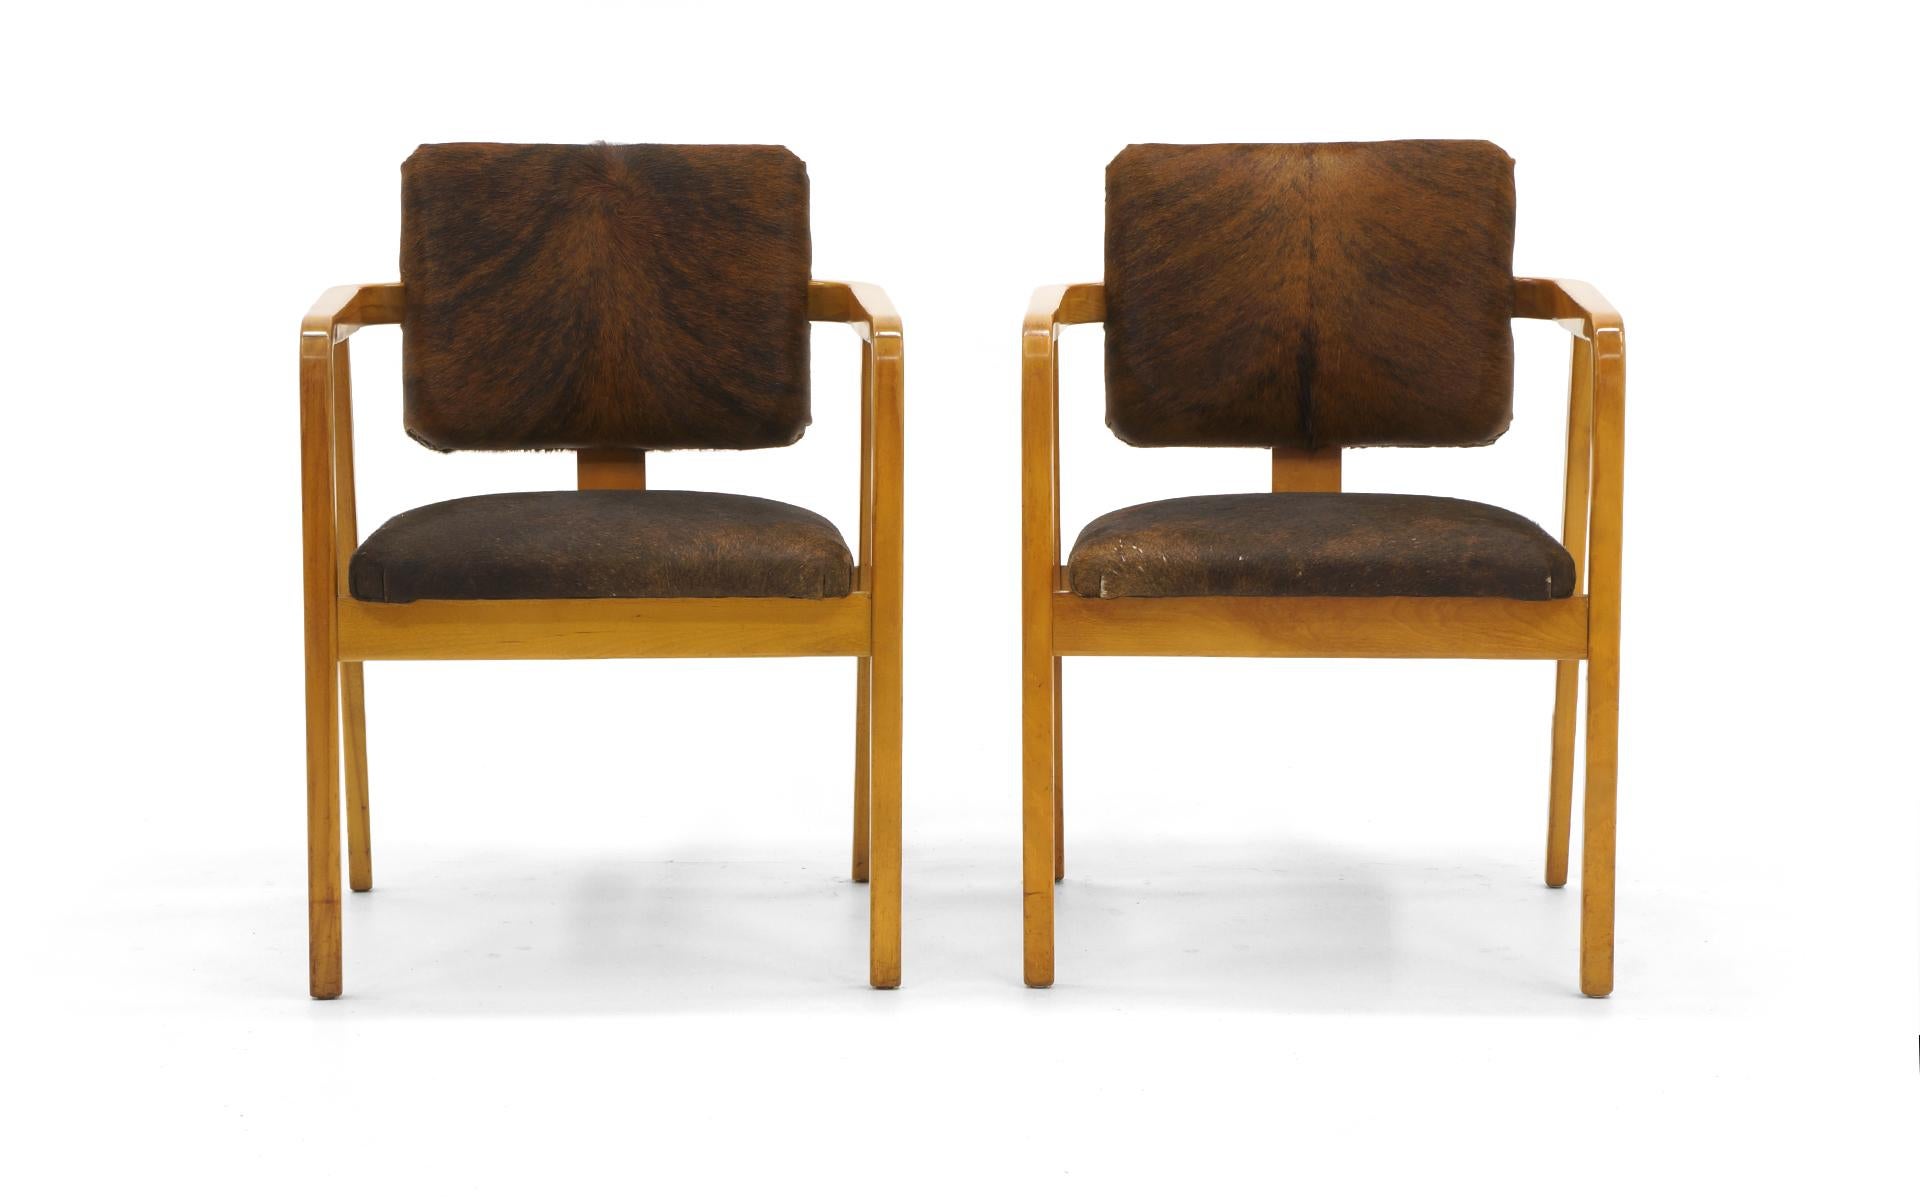 Ein Paar Sessel von George Nelson für Herman Miller mit neuer Kuhfellpolsterung. Großartig für jede moderne Umgebung neben der offensichtlichen modernen Hütte oder rustikalen Umgebung.